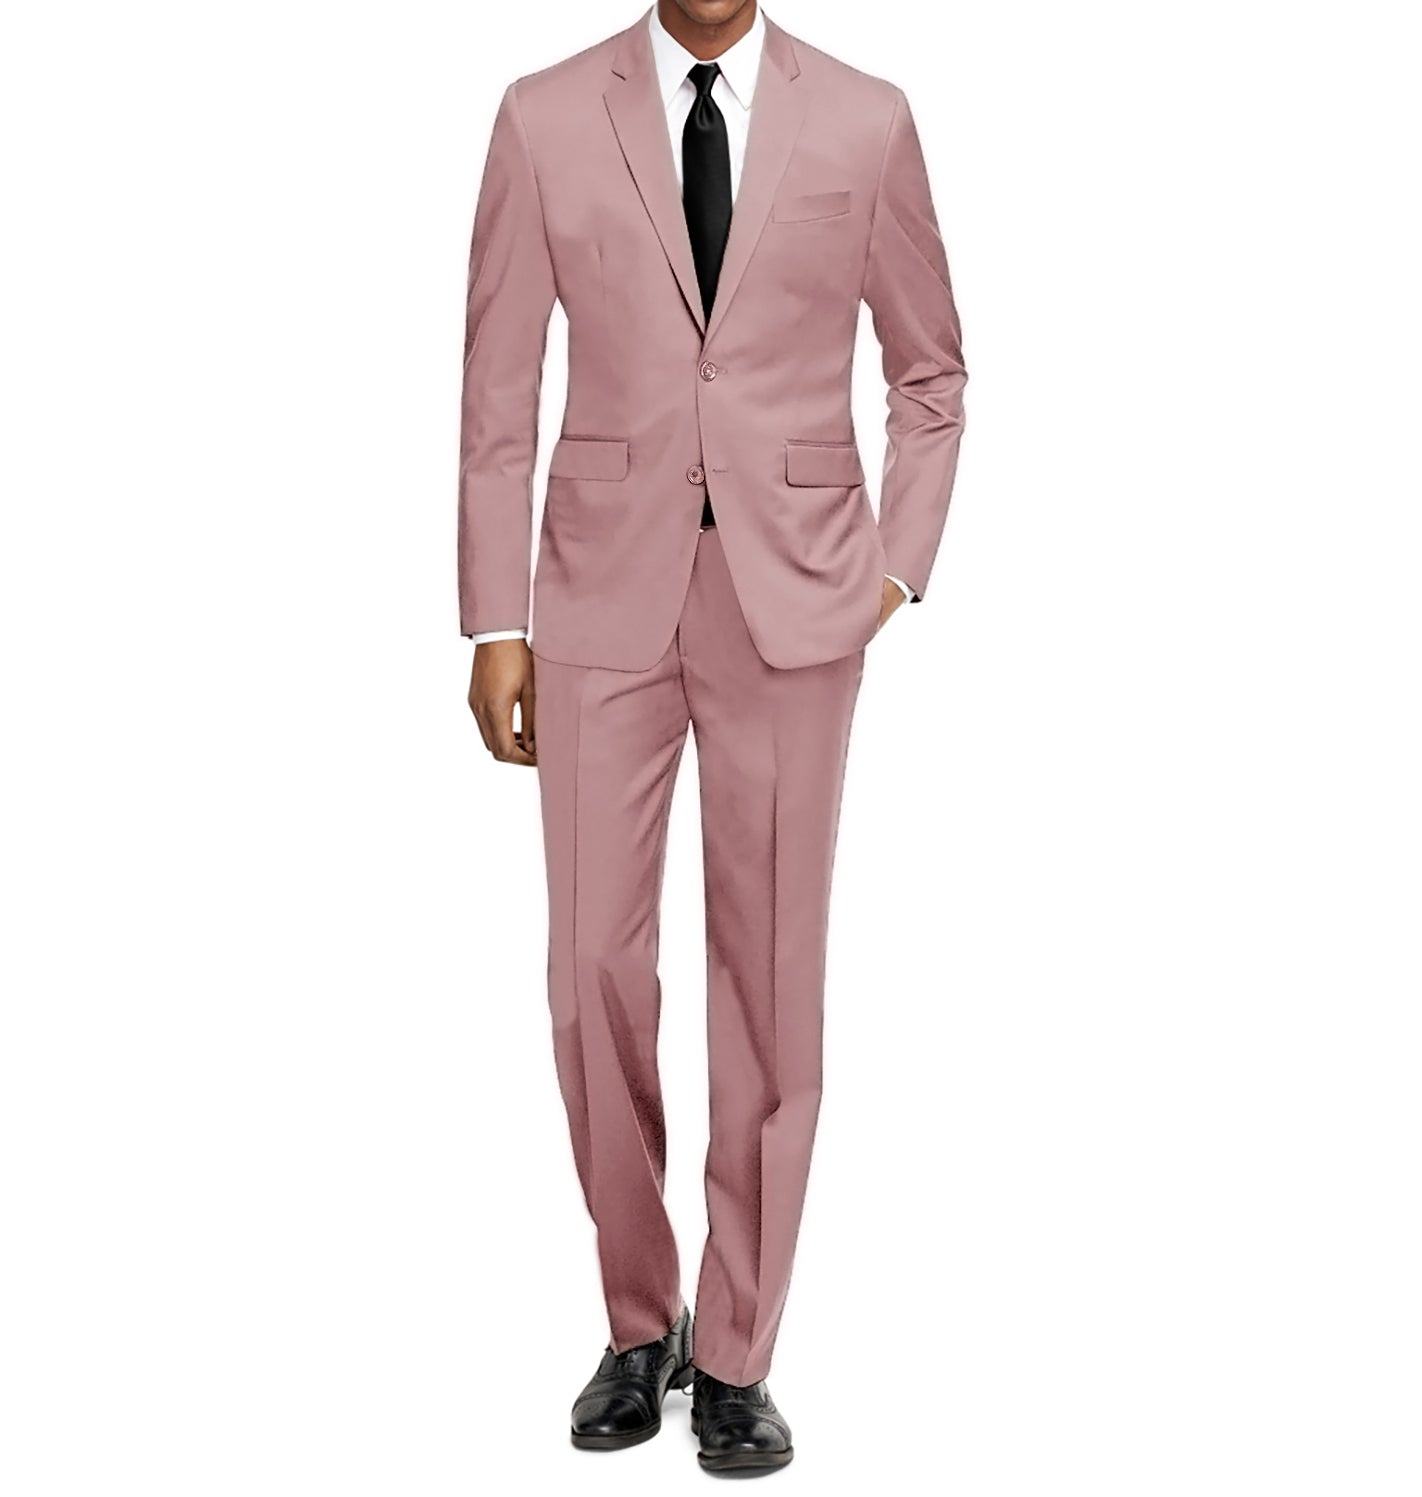 https://www.dailyhaute.com/cdn/shop/products/Braveman-Men-s-Formal-Two-Piece-2-Piece-Slim-Fit-Cut-Suit-Set-DAILYHAUTE-7547_1422x1497.jpg?v=1695357379